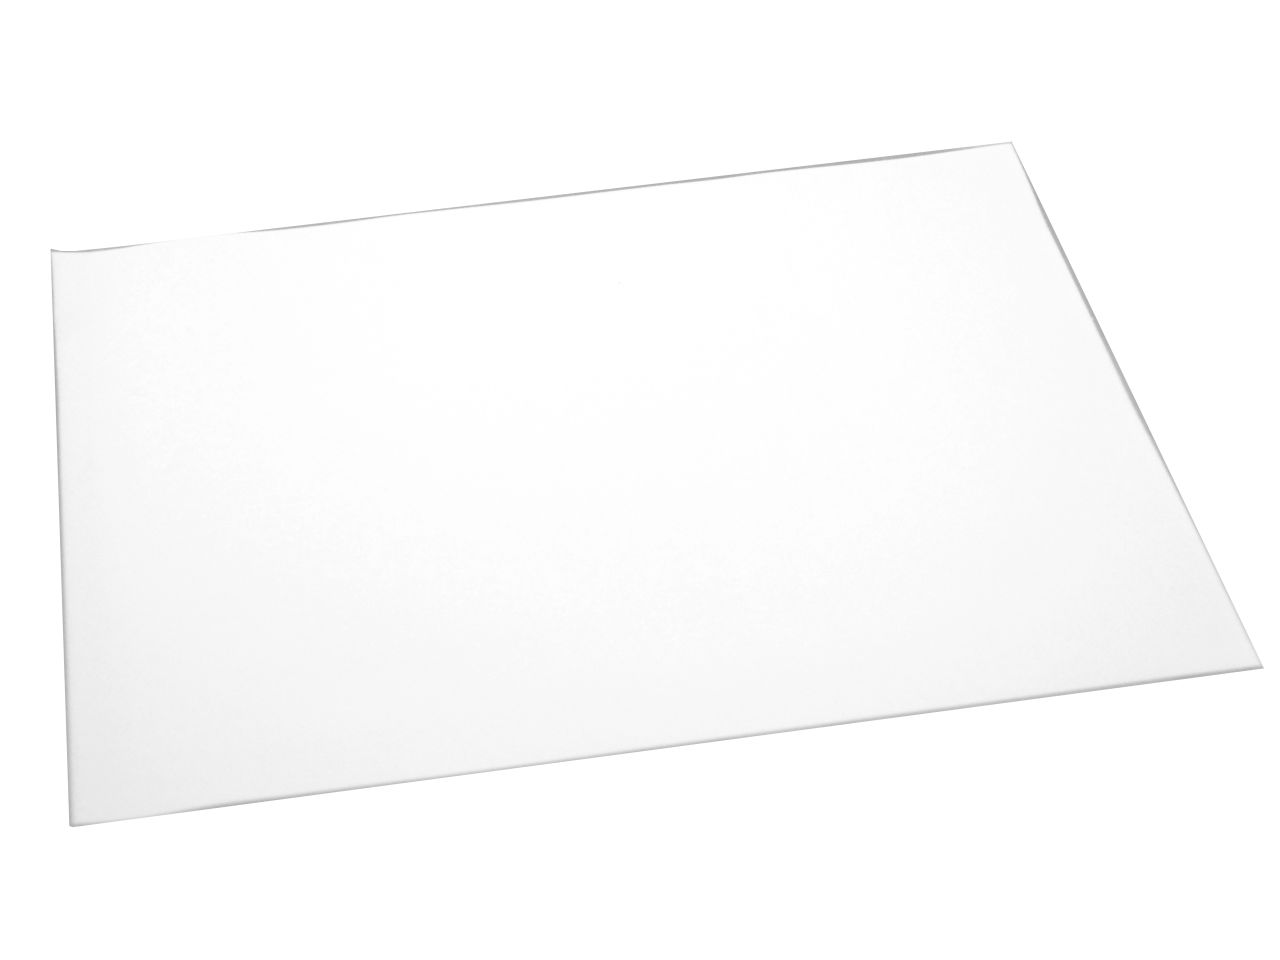 Fondantpapier: Tortenaufleger Blanko, Weiß, bemalbar/bedruckbar, 2 Stück à 20 x 30 cm